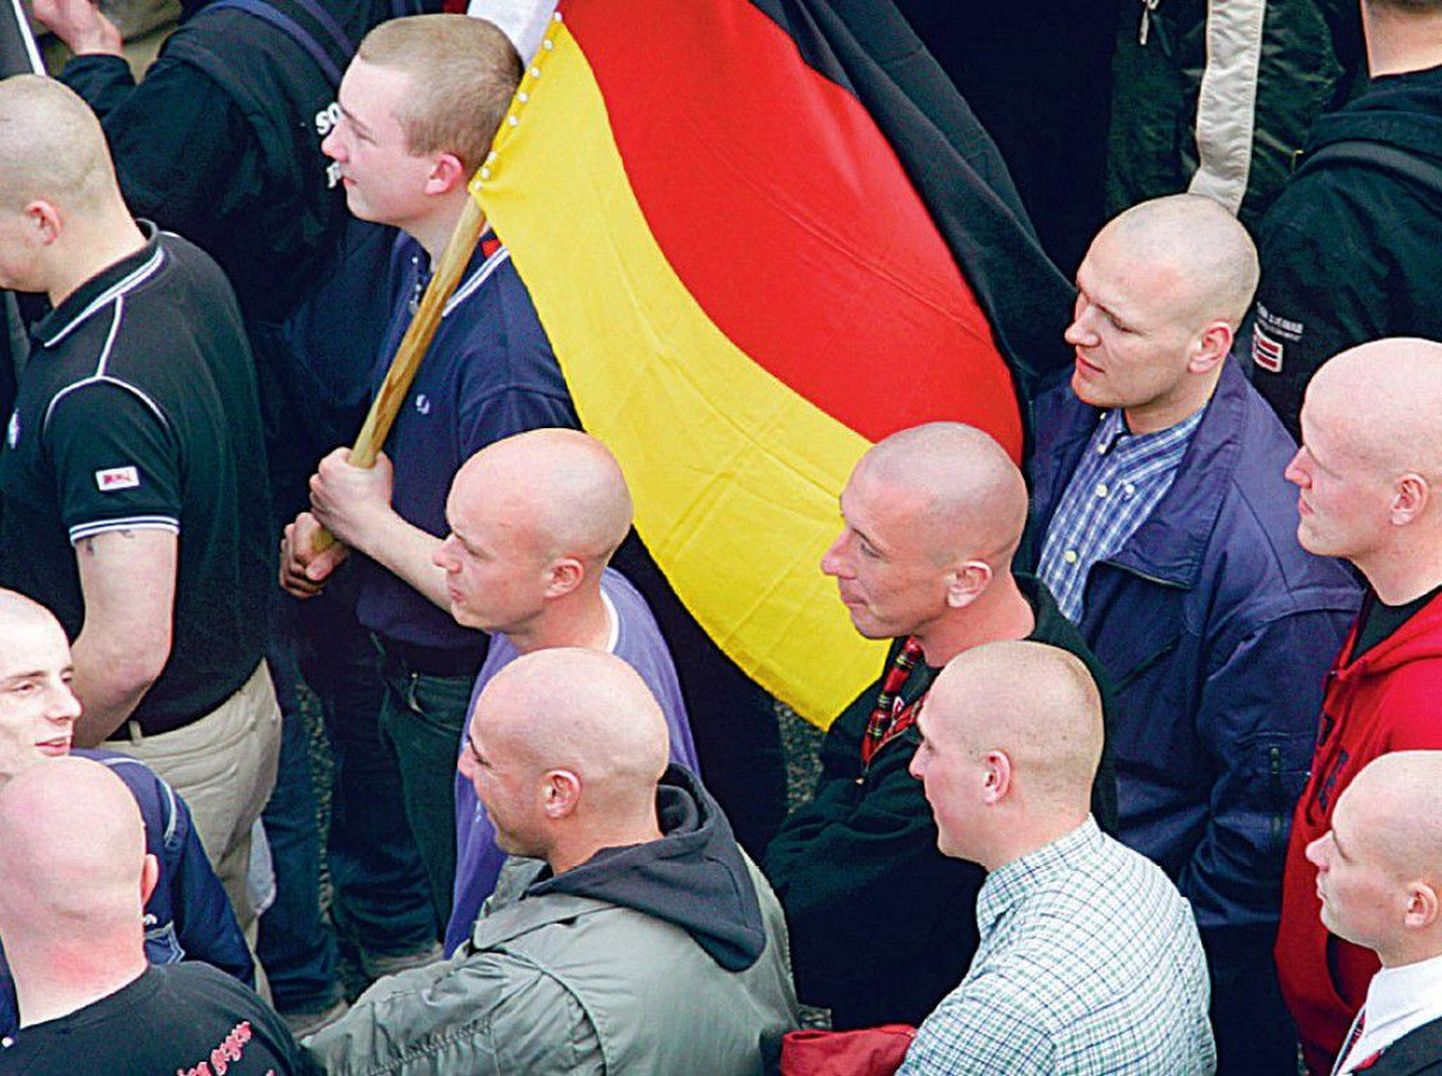 Saksamaa Natsionaaldemokraatliku Parteiga seostatavate
neonatside võõravihast kantud rünnakud on päevakorda
tõstnud küsimuse, kas ei peaks natsionaaldemokraatlikku
parteid ära keelama.